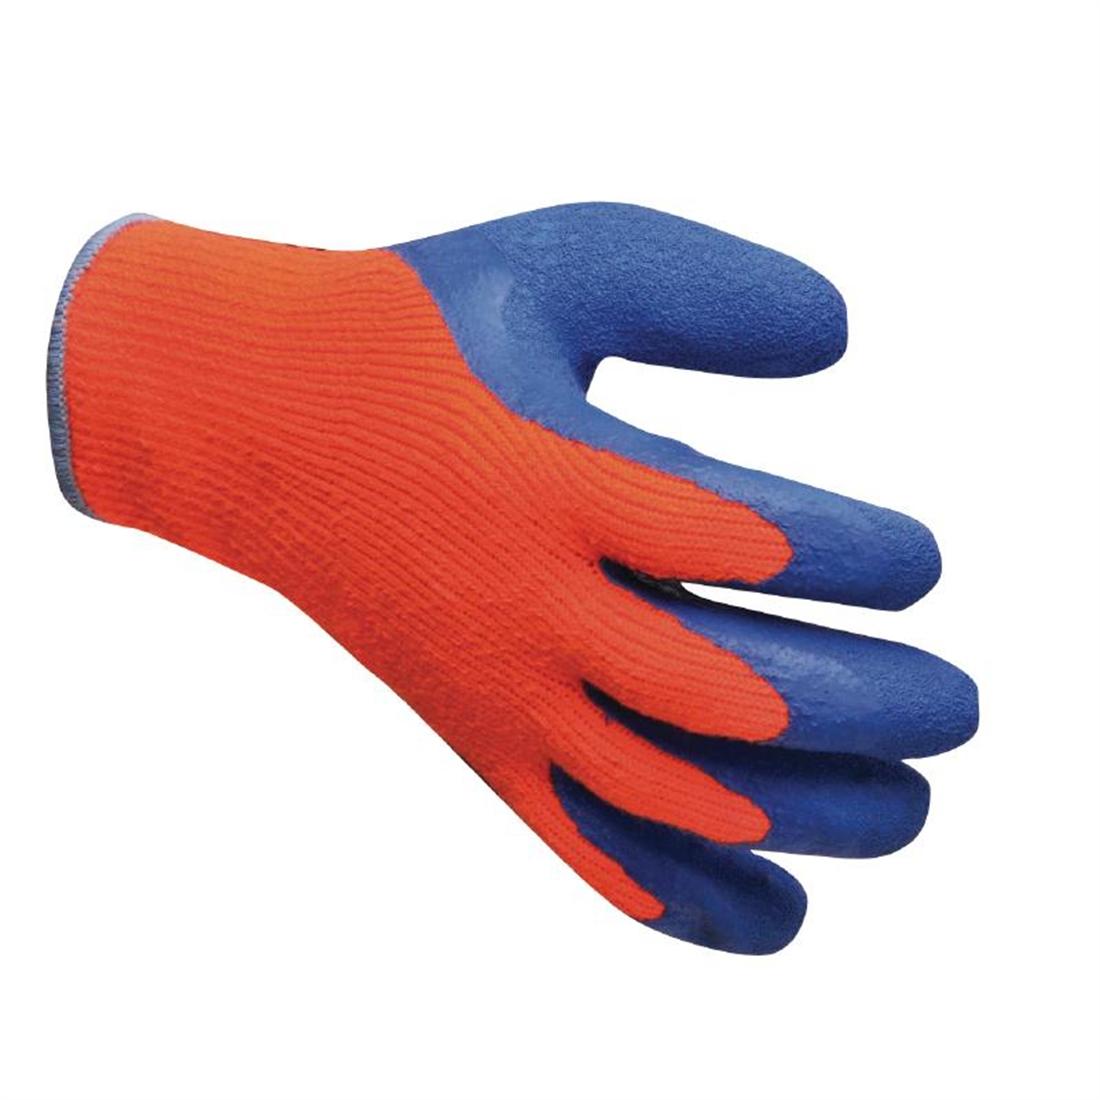 Freezer Gloves - CA975  - 3